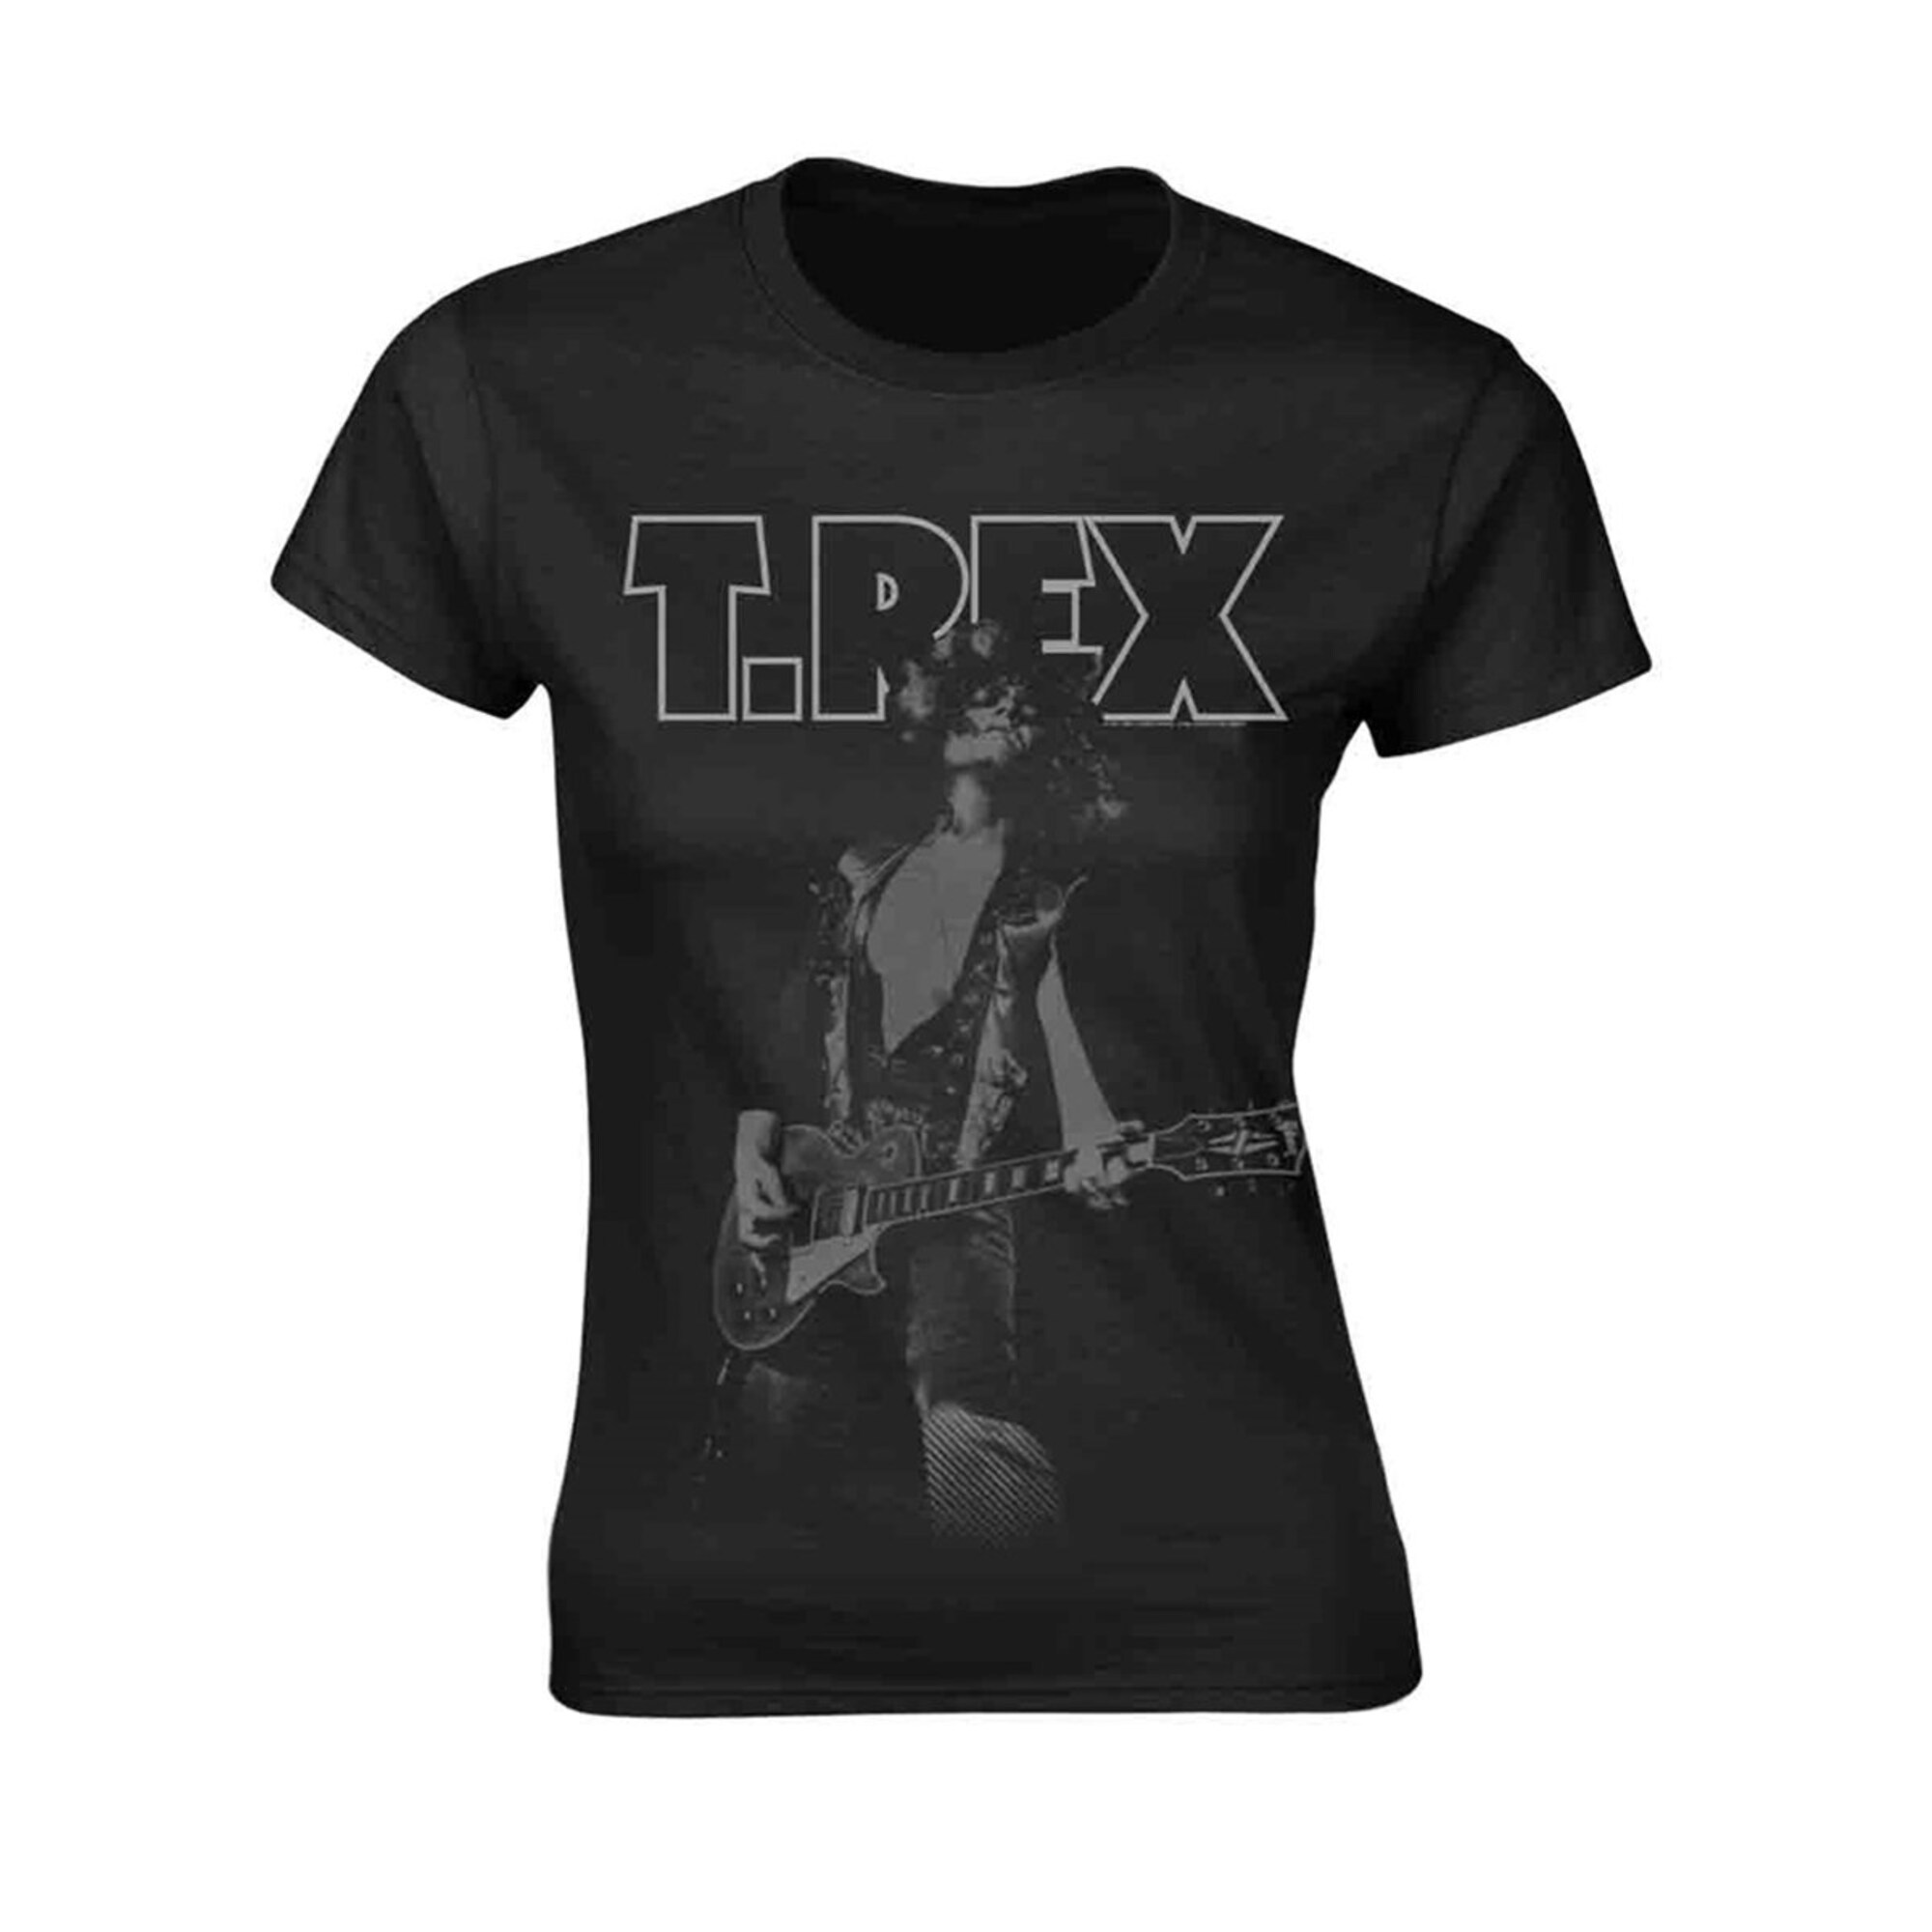 Ladies T-Rex Marc Bolan BW Guitar Pose Tee T-Shirt